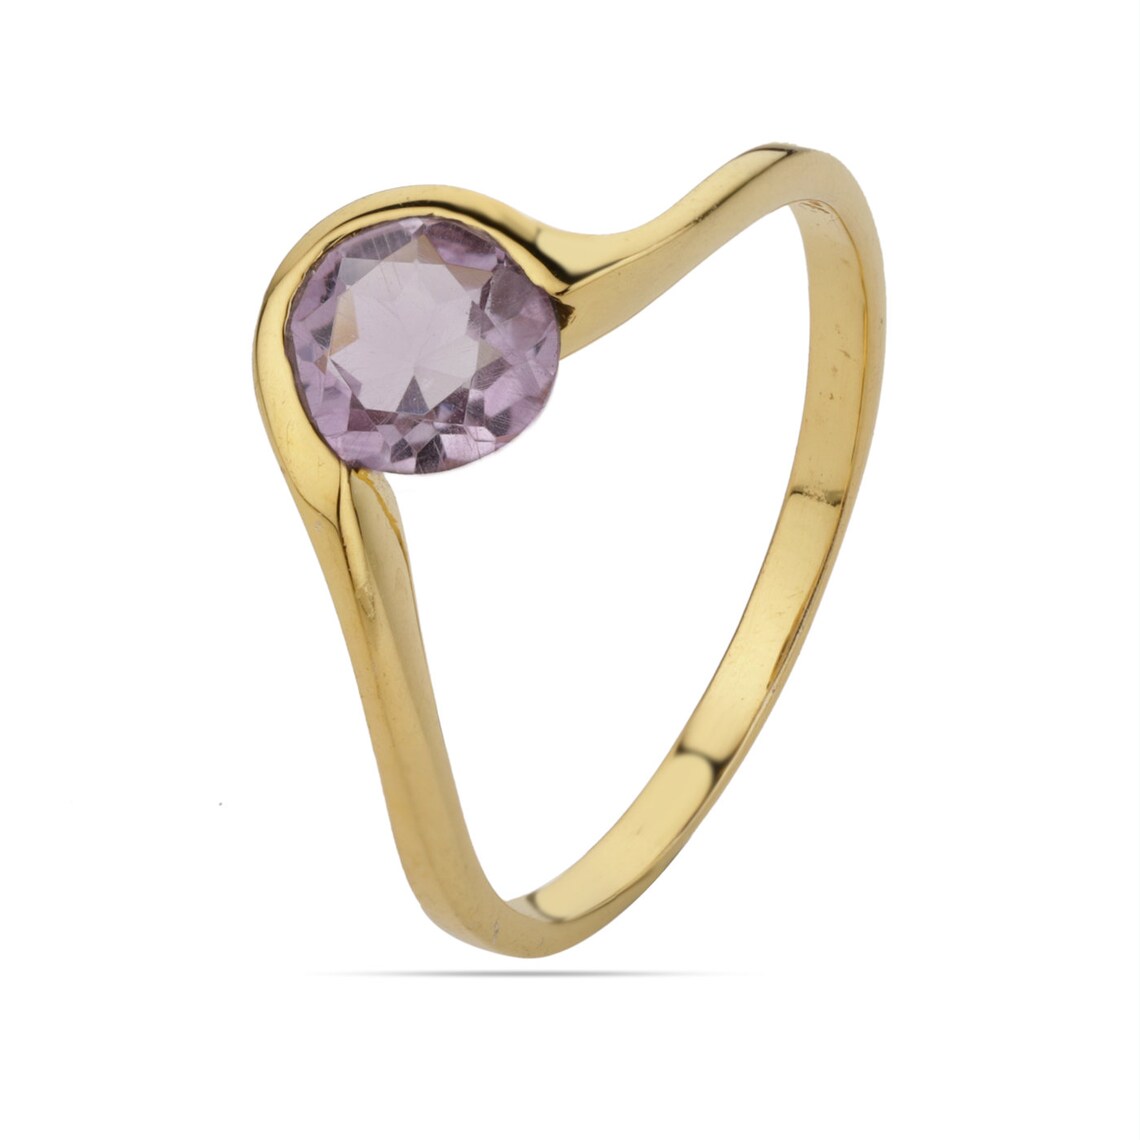 Round Amethyst Ring, Amethyst Gold Ring, Amethyst Gemstone Ring, Round Cut Amethyst Ring, Purple Amethyst gold Ring, Natural Amethyst Ring